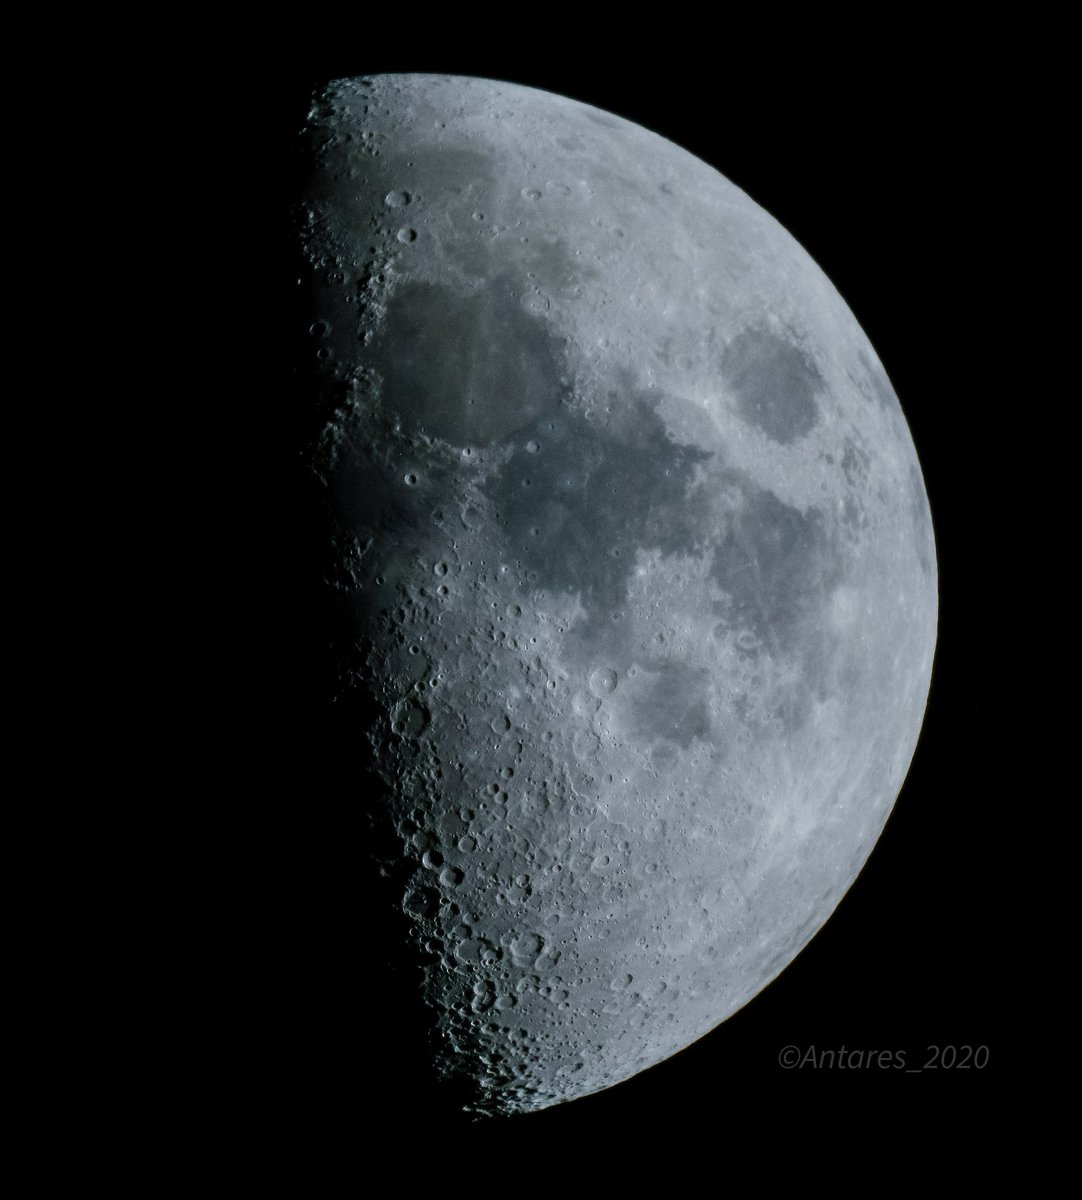 Gm günaydın... Eveet, bugün günlerden #ArtemisLaunch #Artemis biz de takipteyizz... #tbt #moon